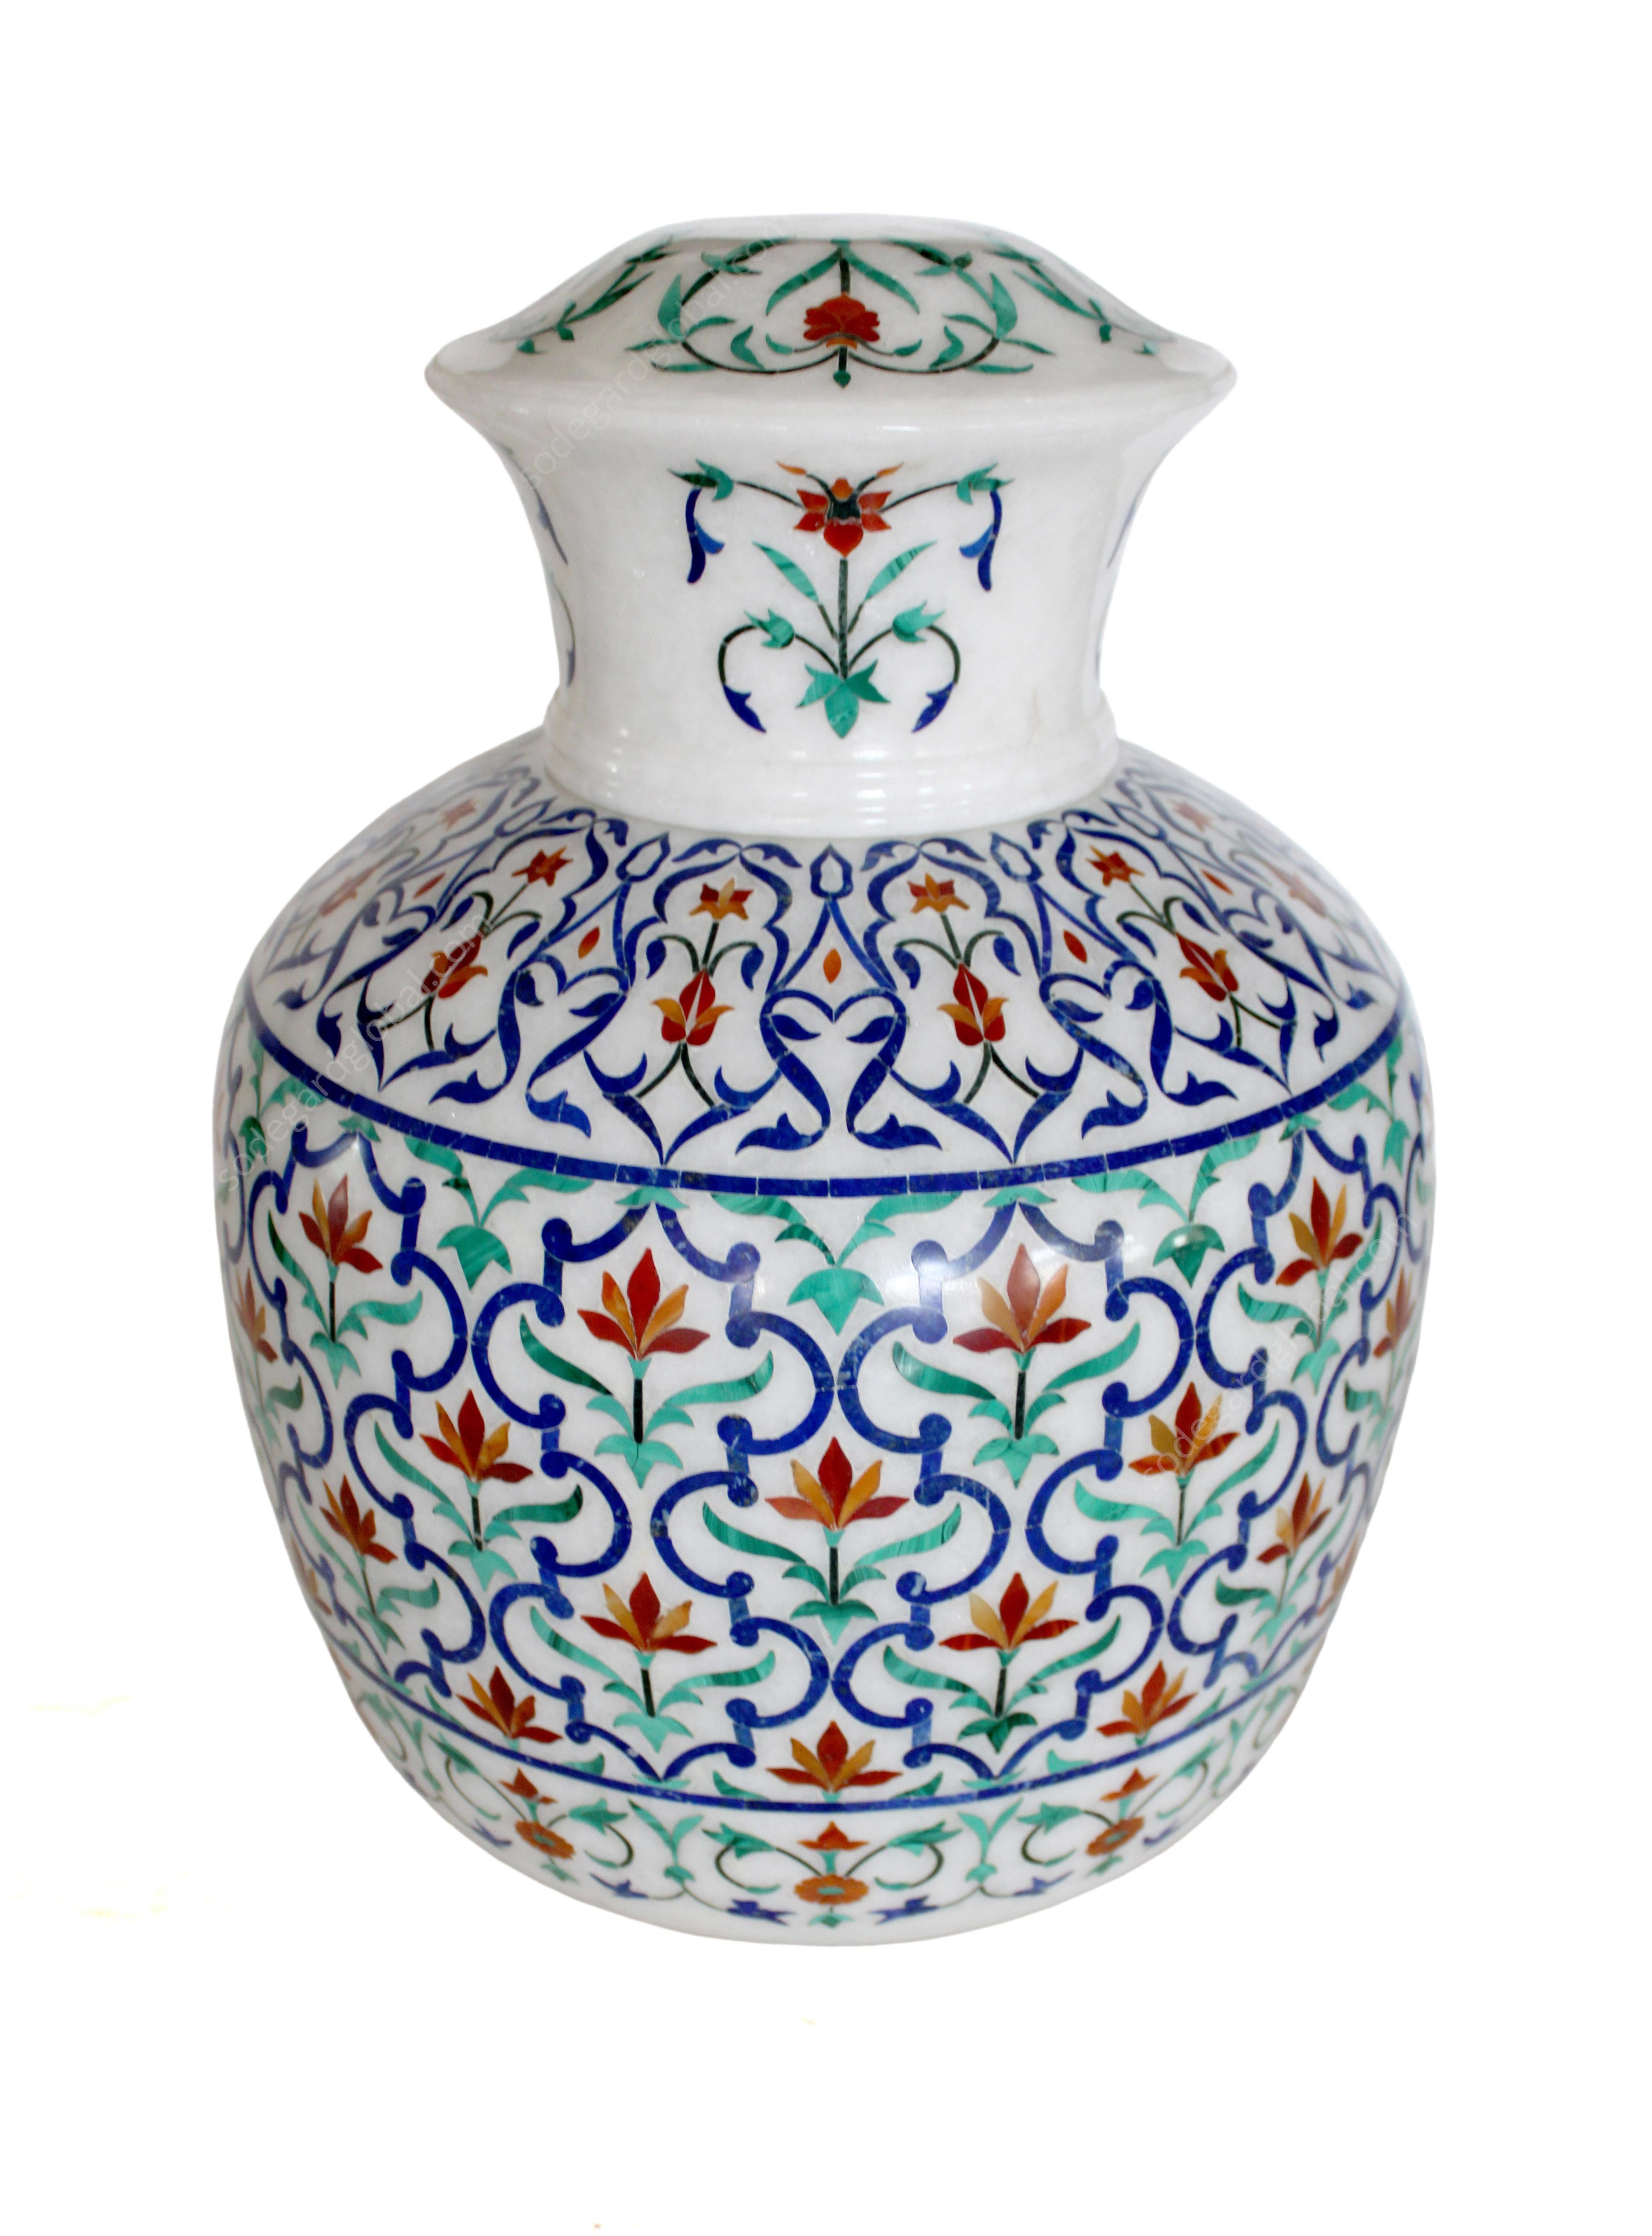 Diese atemberaubende Vase zeigt eines der auffälligsten Motive der Mogularchitektur in Indien. Zahlreiche Halbedelsteine sind mit der jahrhundertealten Technik der pietra dura / pacchikari auf dem weißesten Marmor eingelegt. Jedes Stück aus